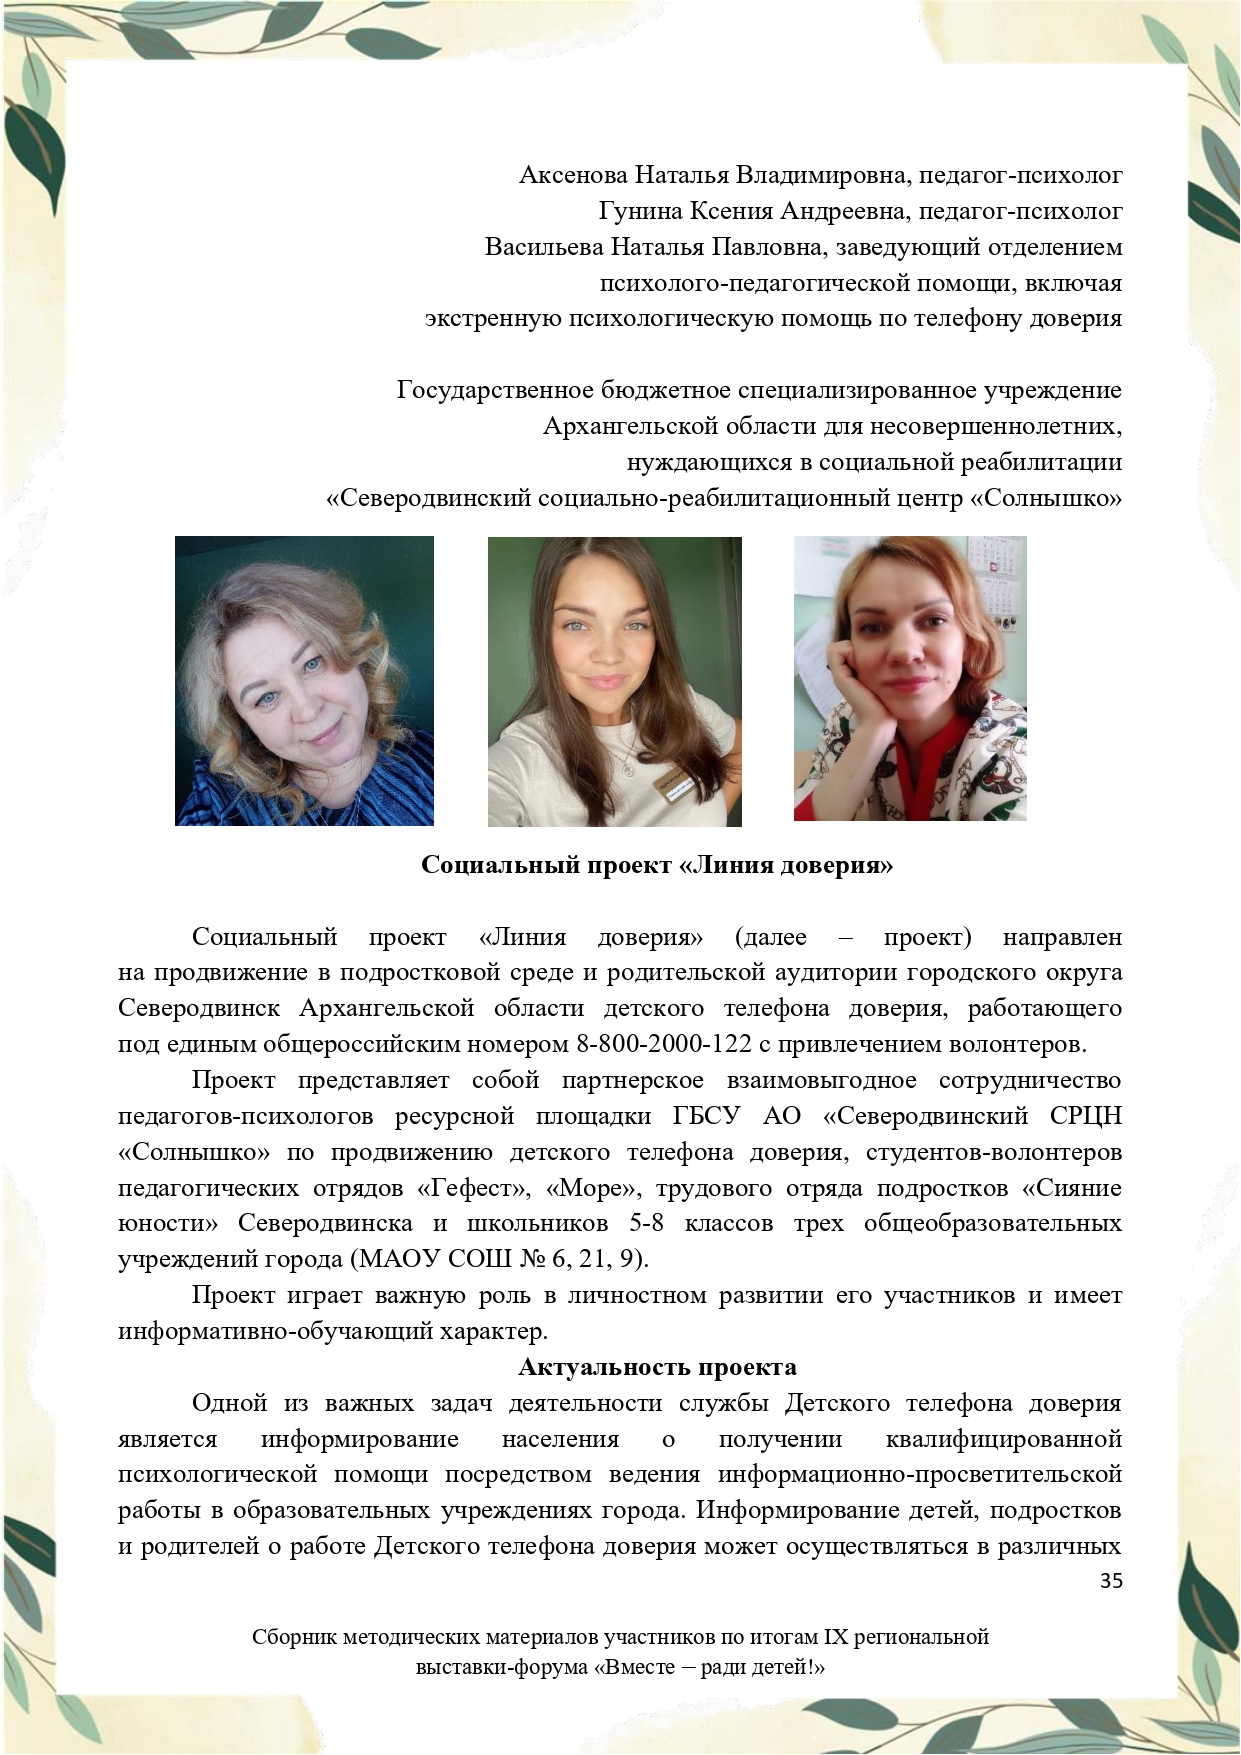 Sbornik_metodicheskikh_materialov_uchastnikov_IX_regionalnoy_vystavki-foruma_Vmeste__radi_detey_33__2023_page-0035